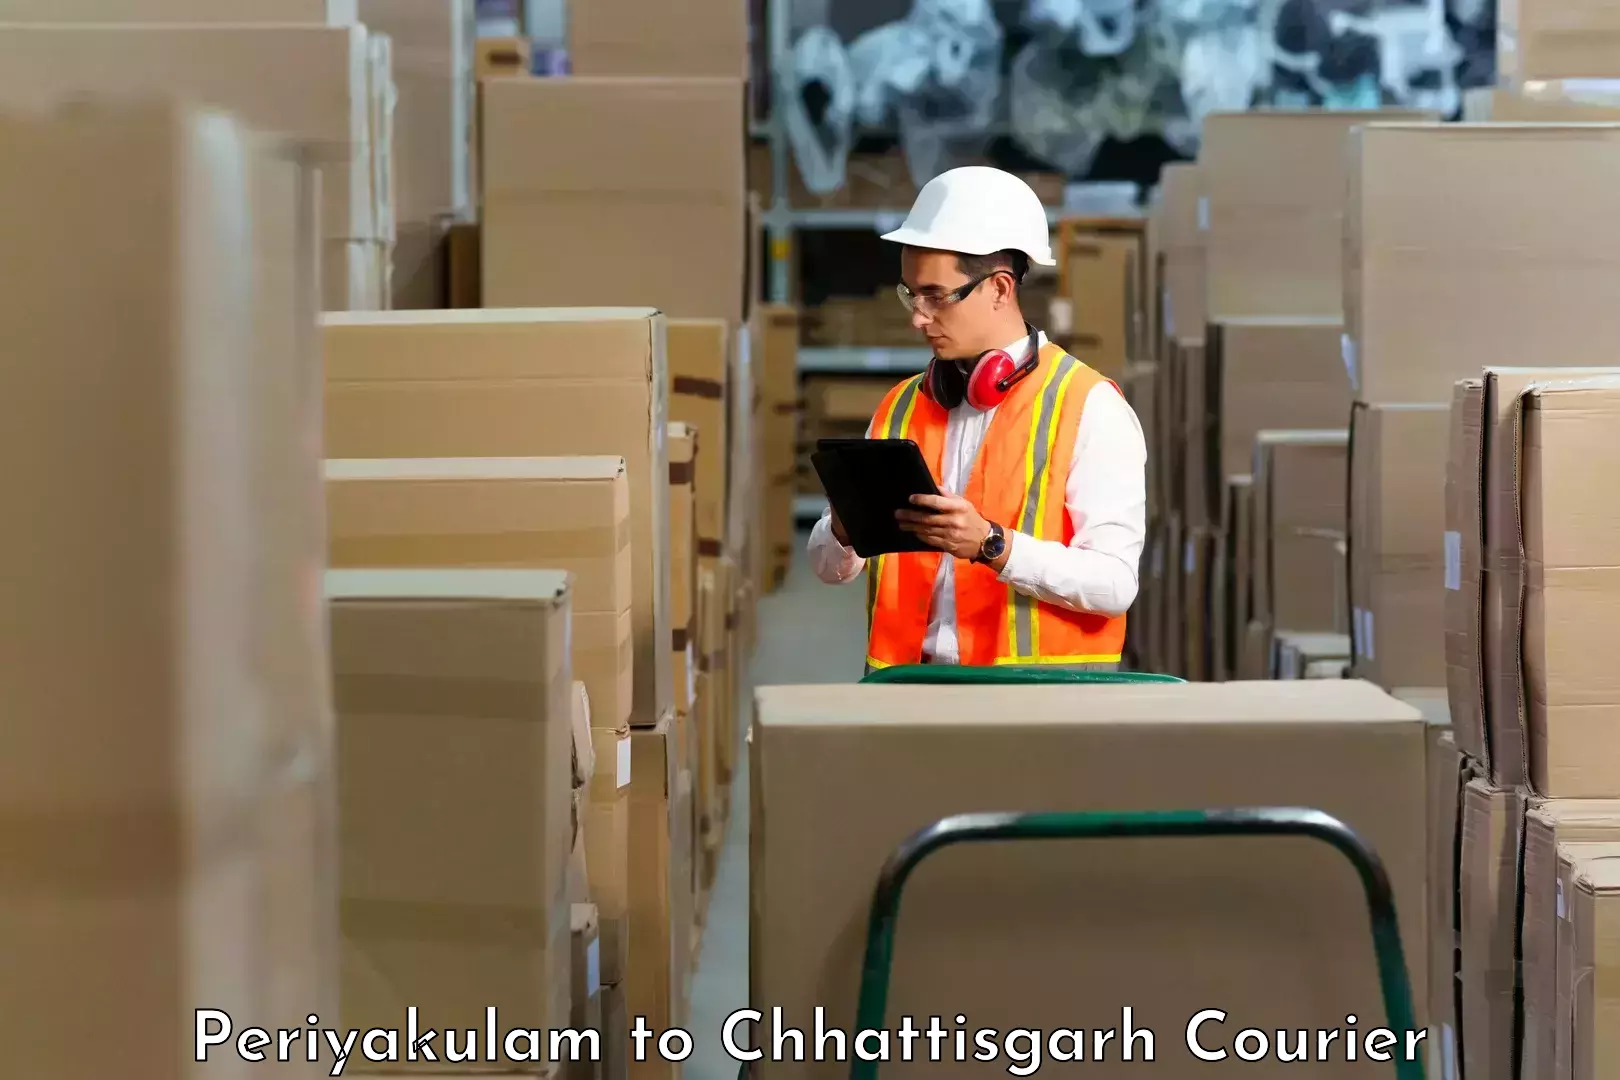 Customizable shipping options in Periyakulam to Raigarh Chhattisgarh